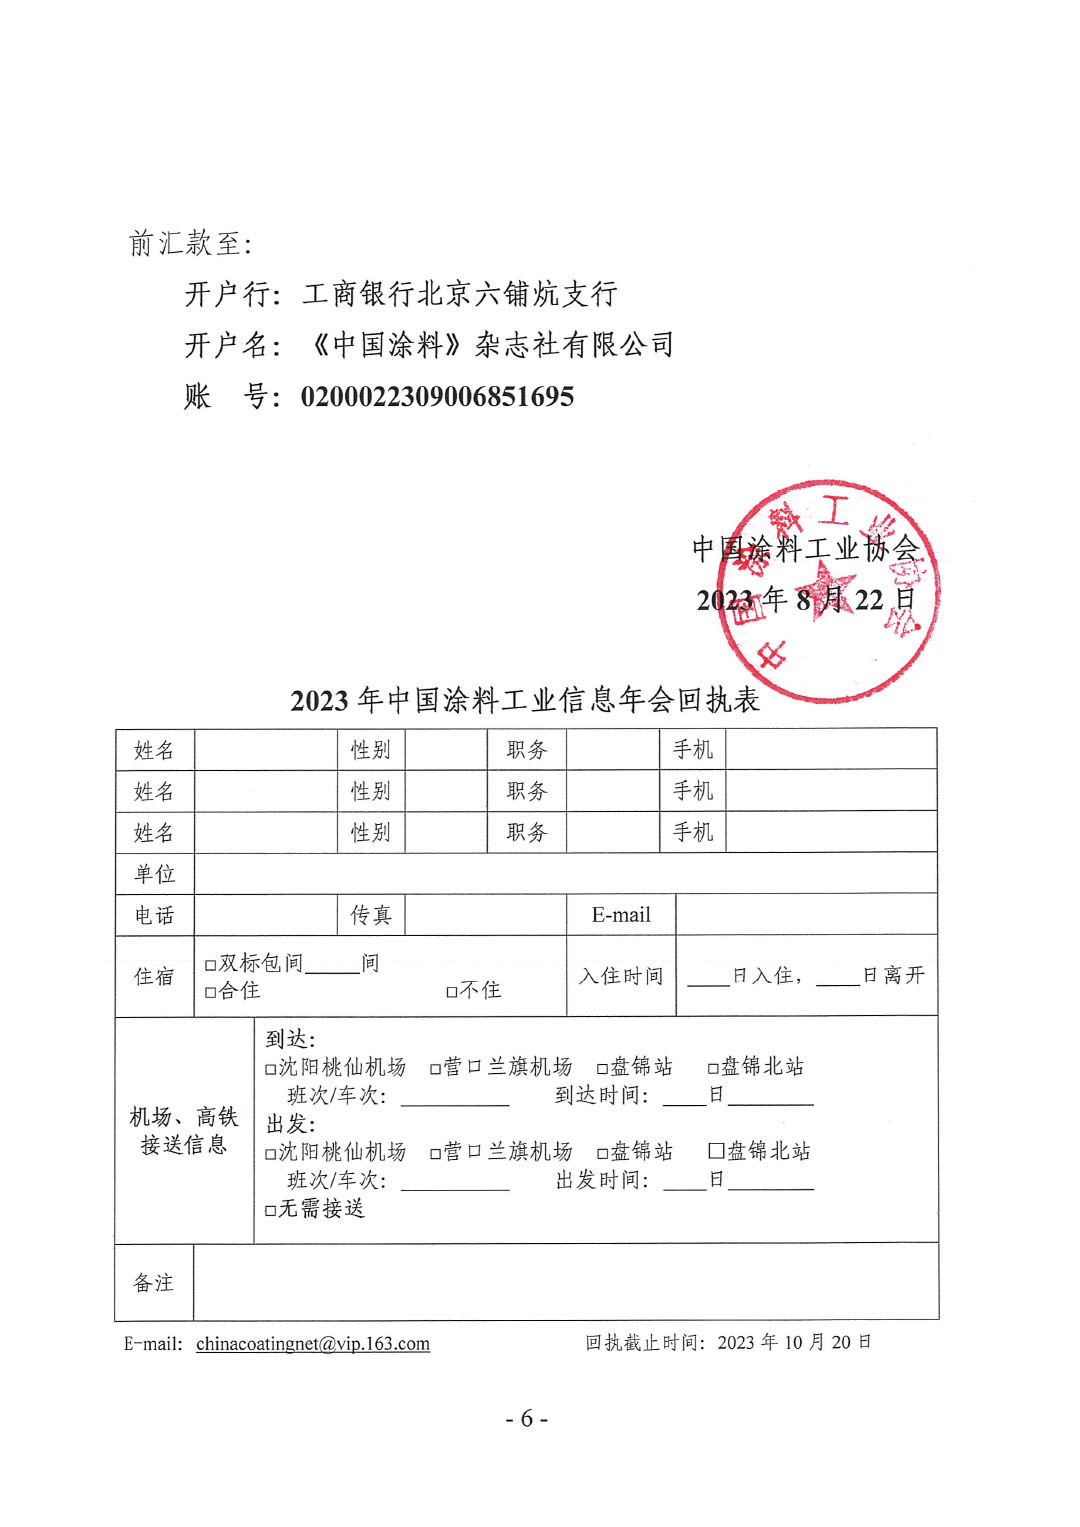 2023年中国涂料工业信息年会预通知（发文版）-6